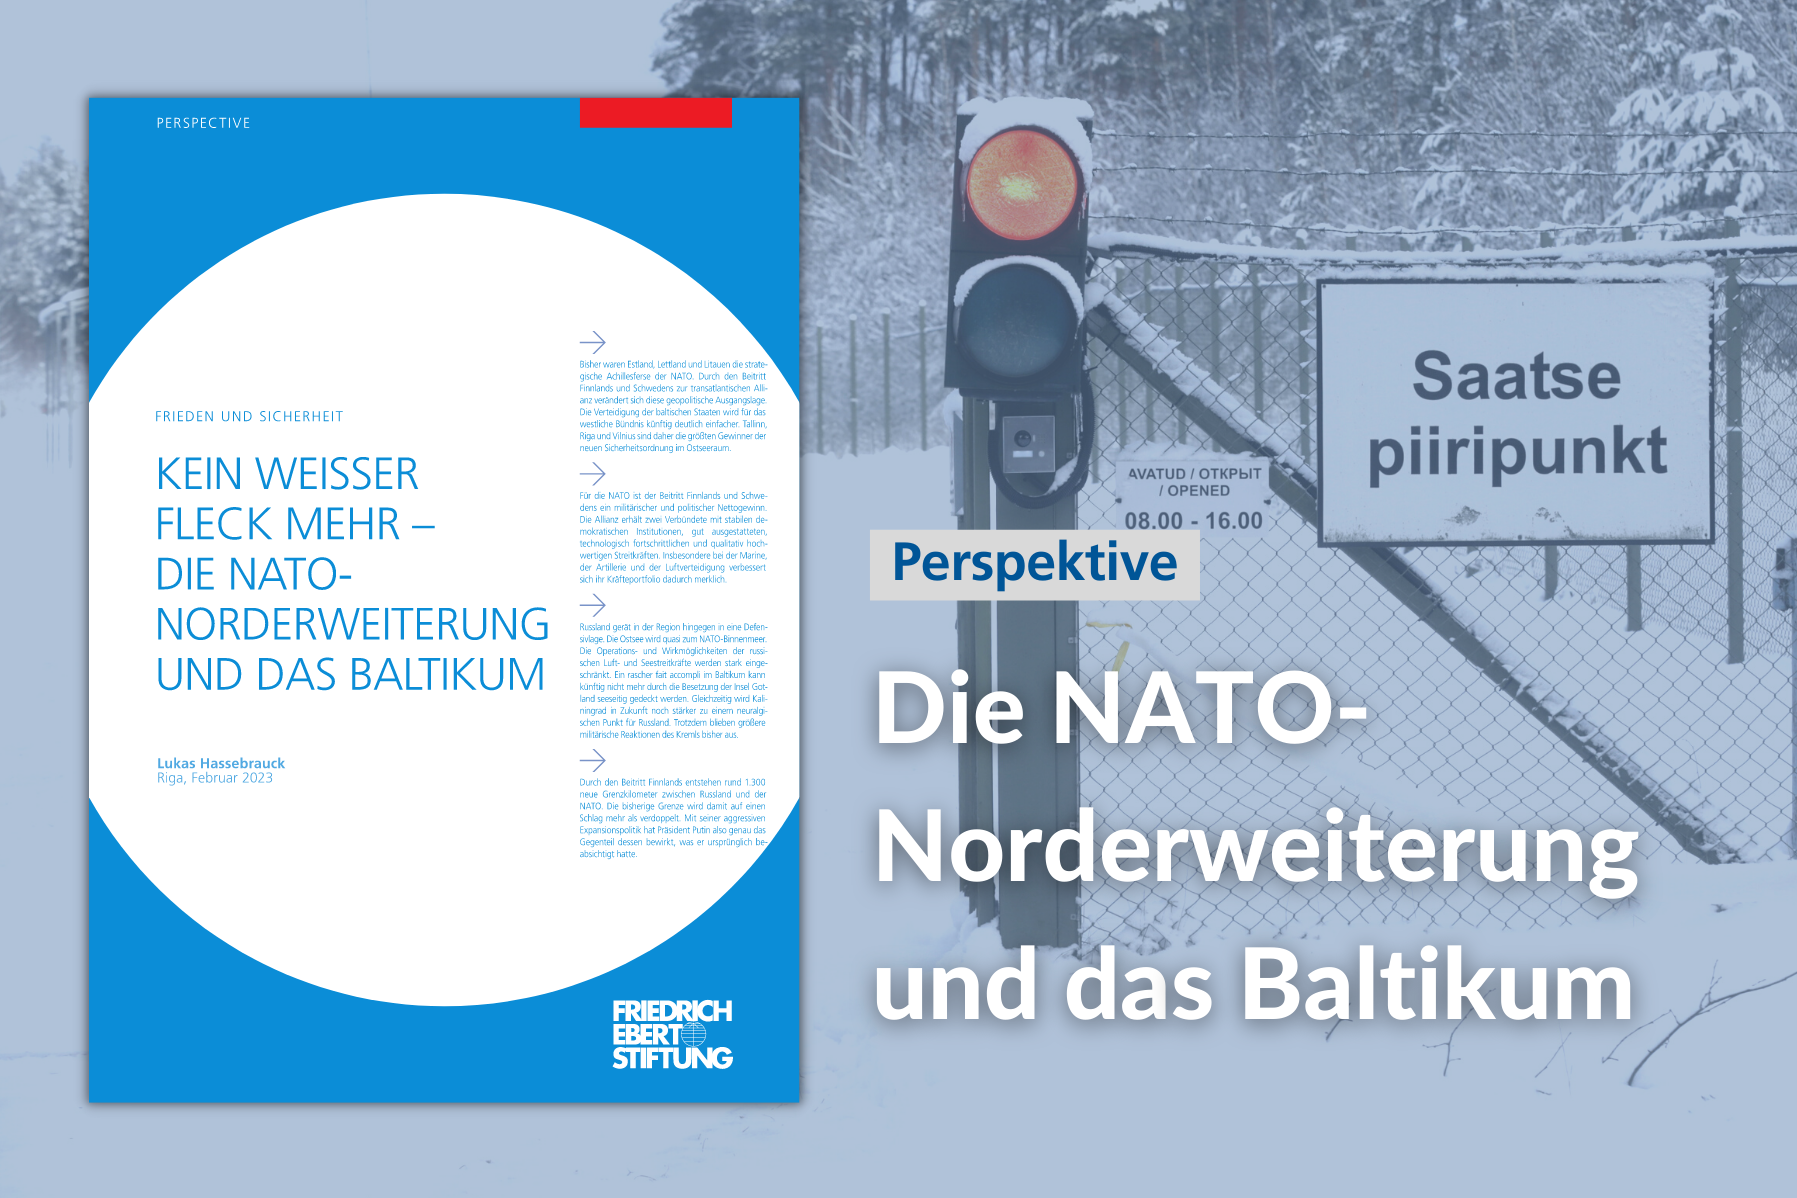 Auf dem Bild ist im Hintergrund der estonisch-russische Grenzübergang Saatse zu sehen. Im Vordergrund ist das Cover der Publikation und der Titel platziert.